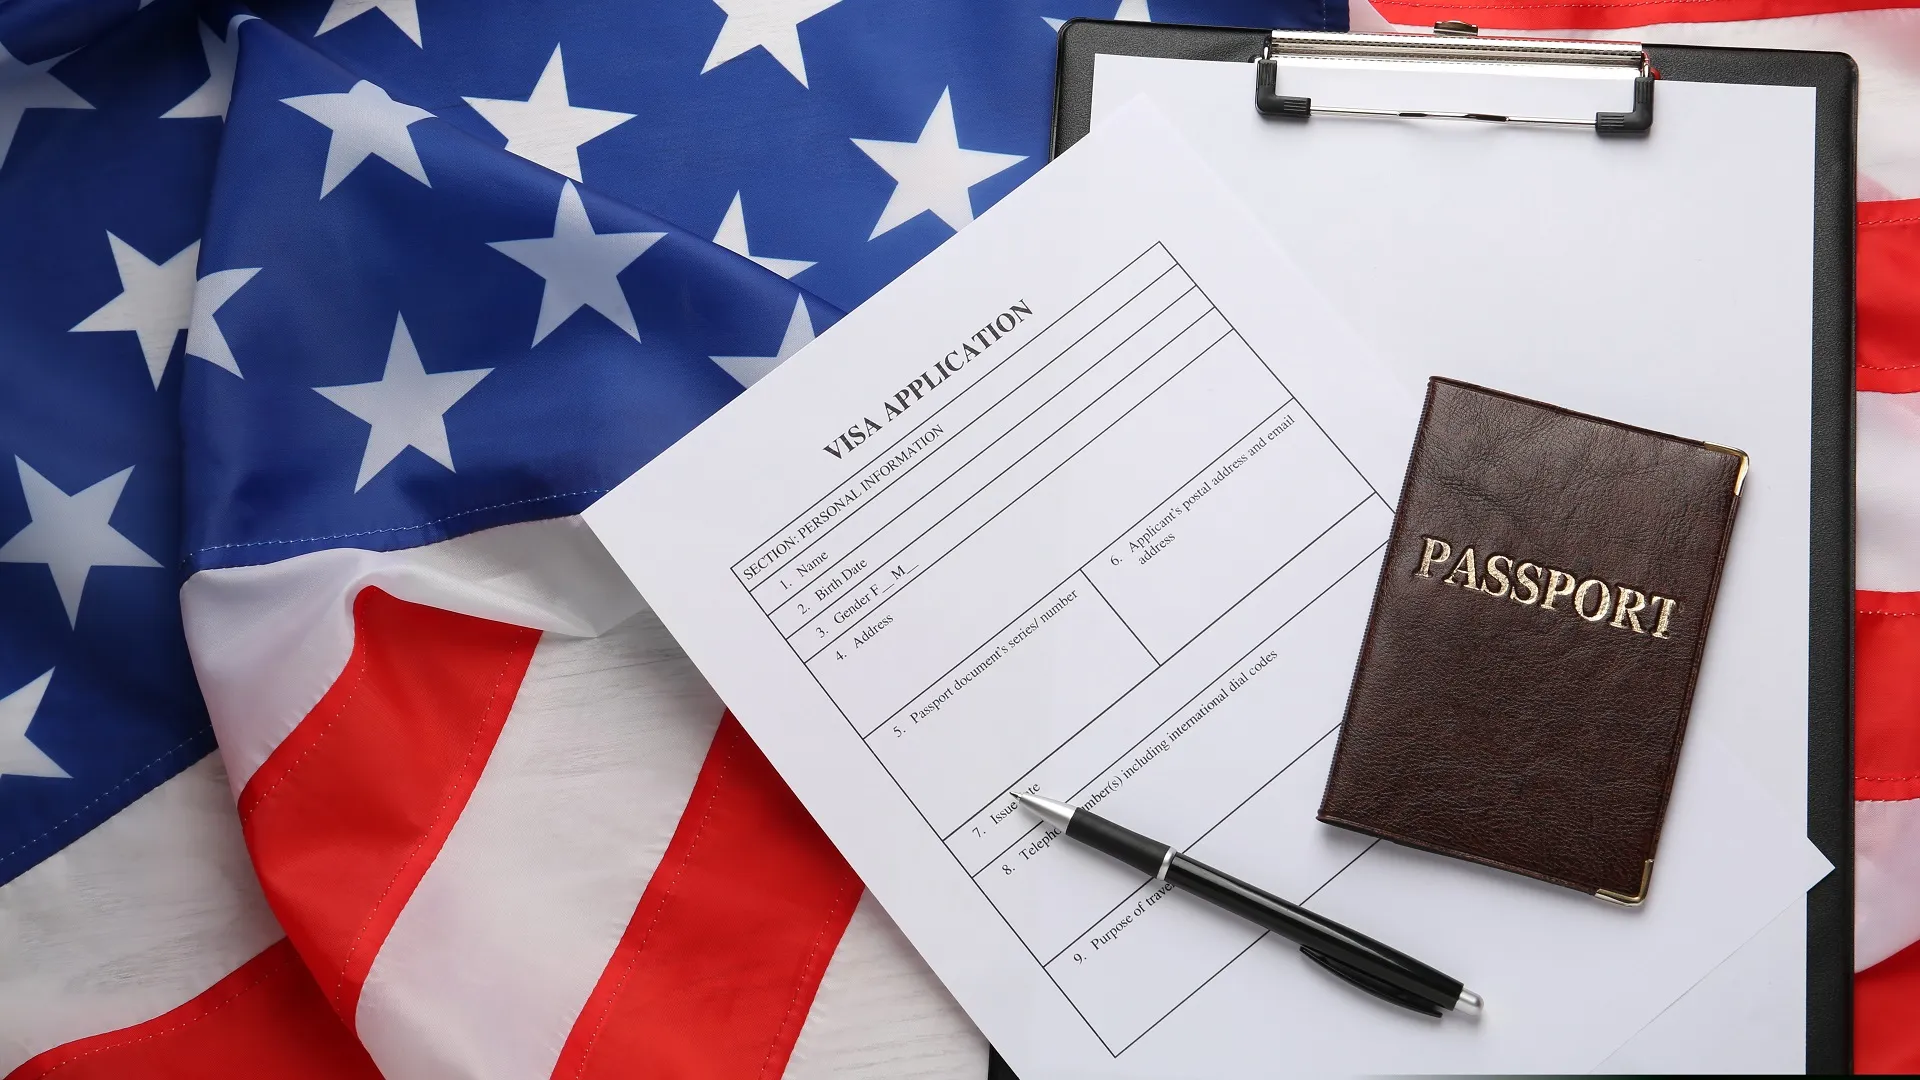 Паспорт и анкета на визу на фоне флага США